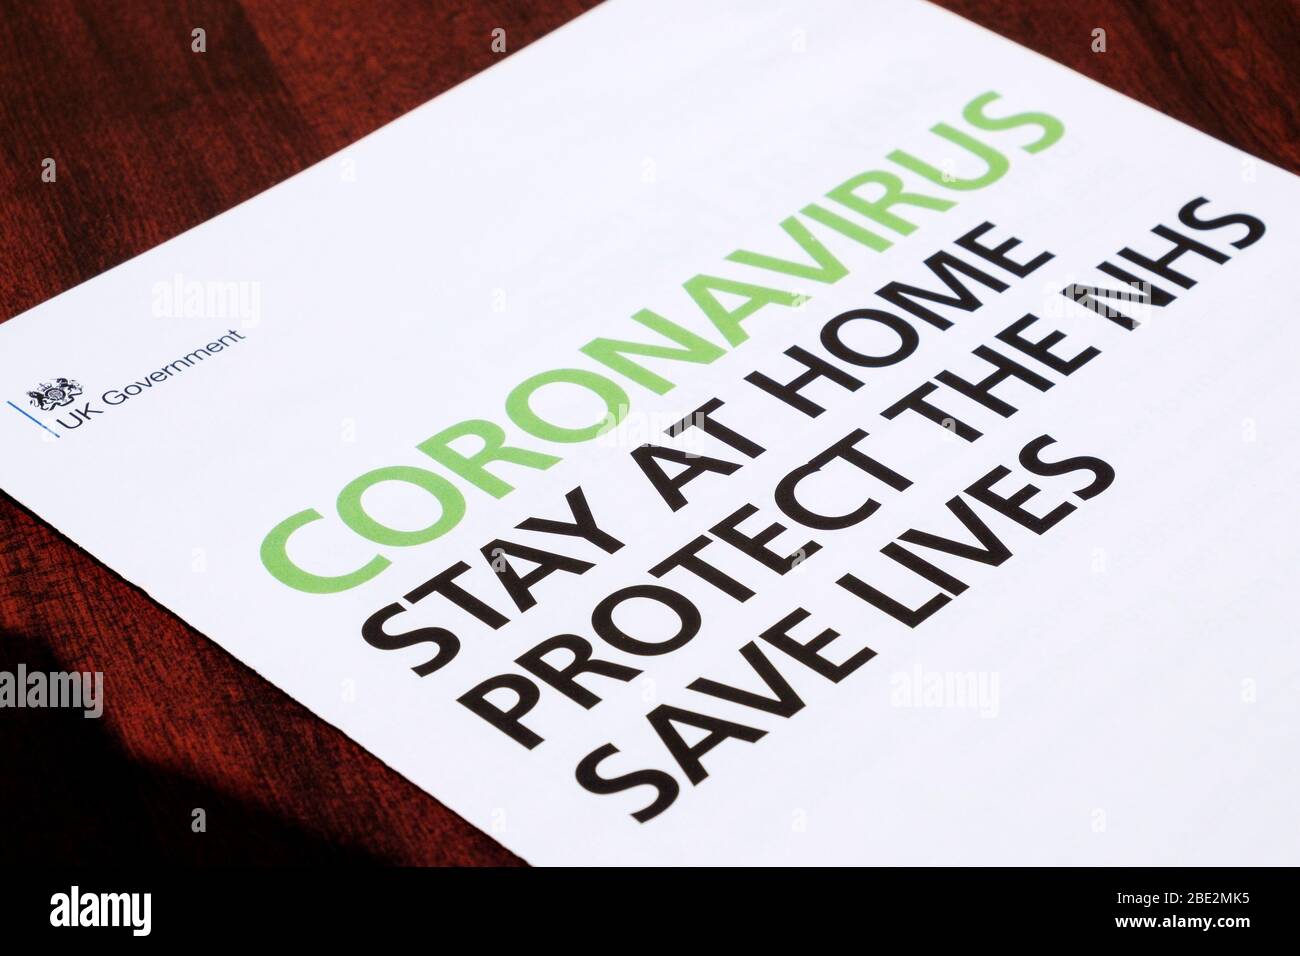 Eine Broschüre der britischen Regierung Stay Home Protect NHS Save Lives, die mit einem Coronavirus-Brief des Premierministers Boris Johnson verschickt wurde, ist abgebildet Stockfoto